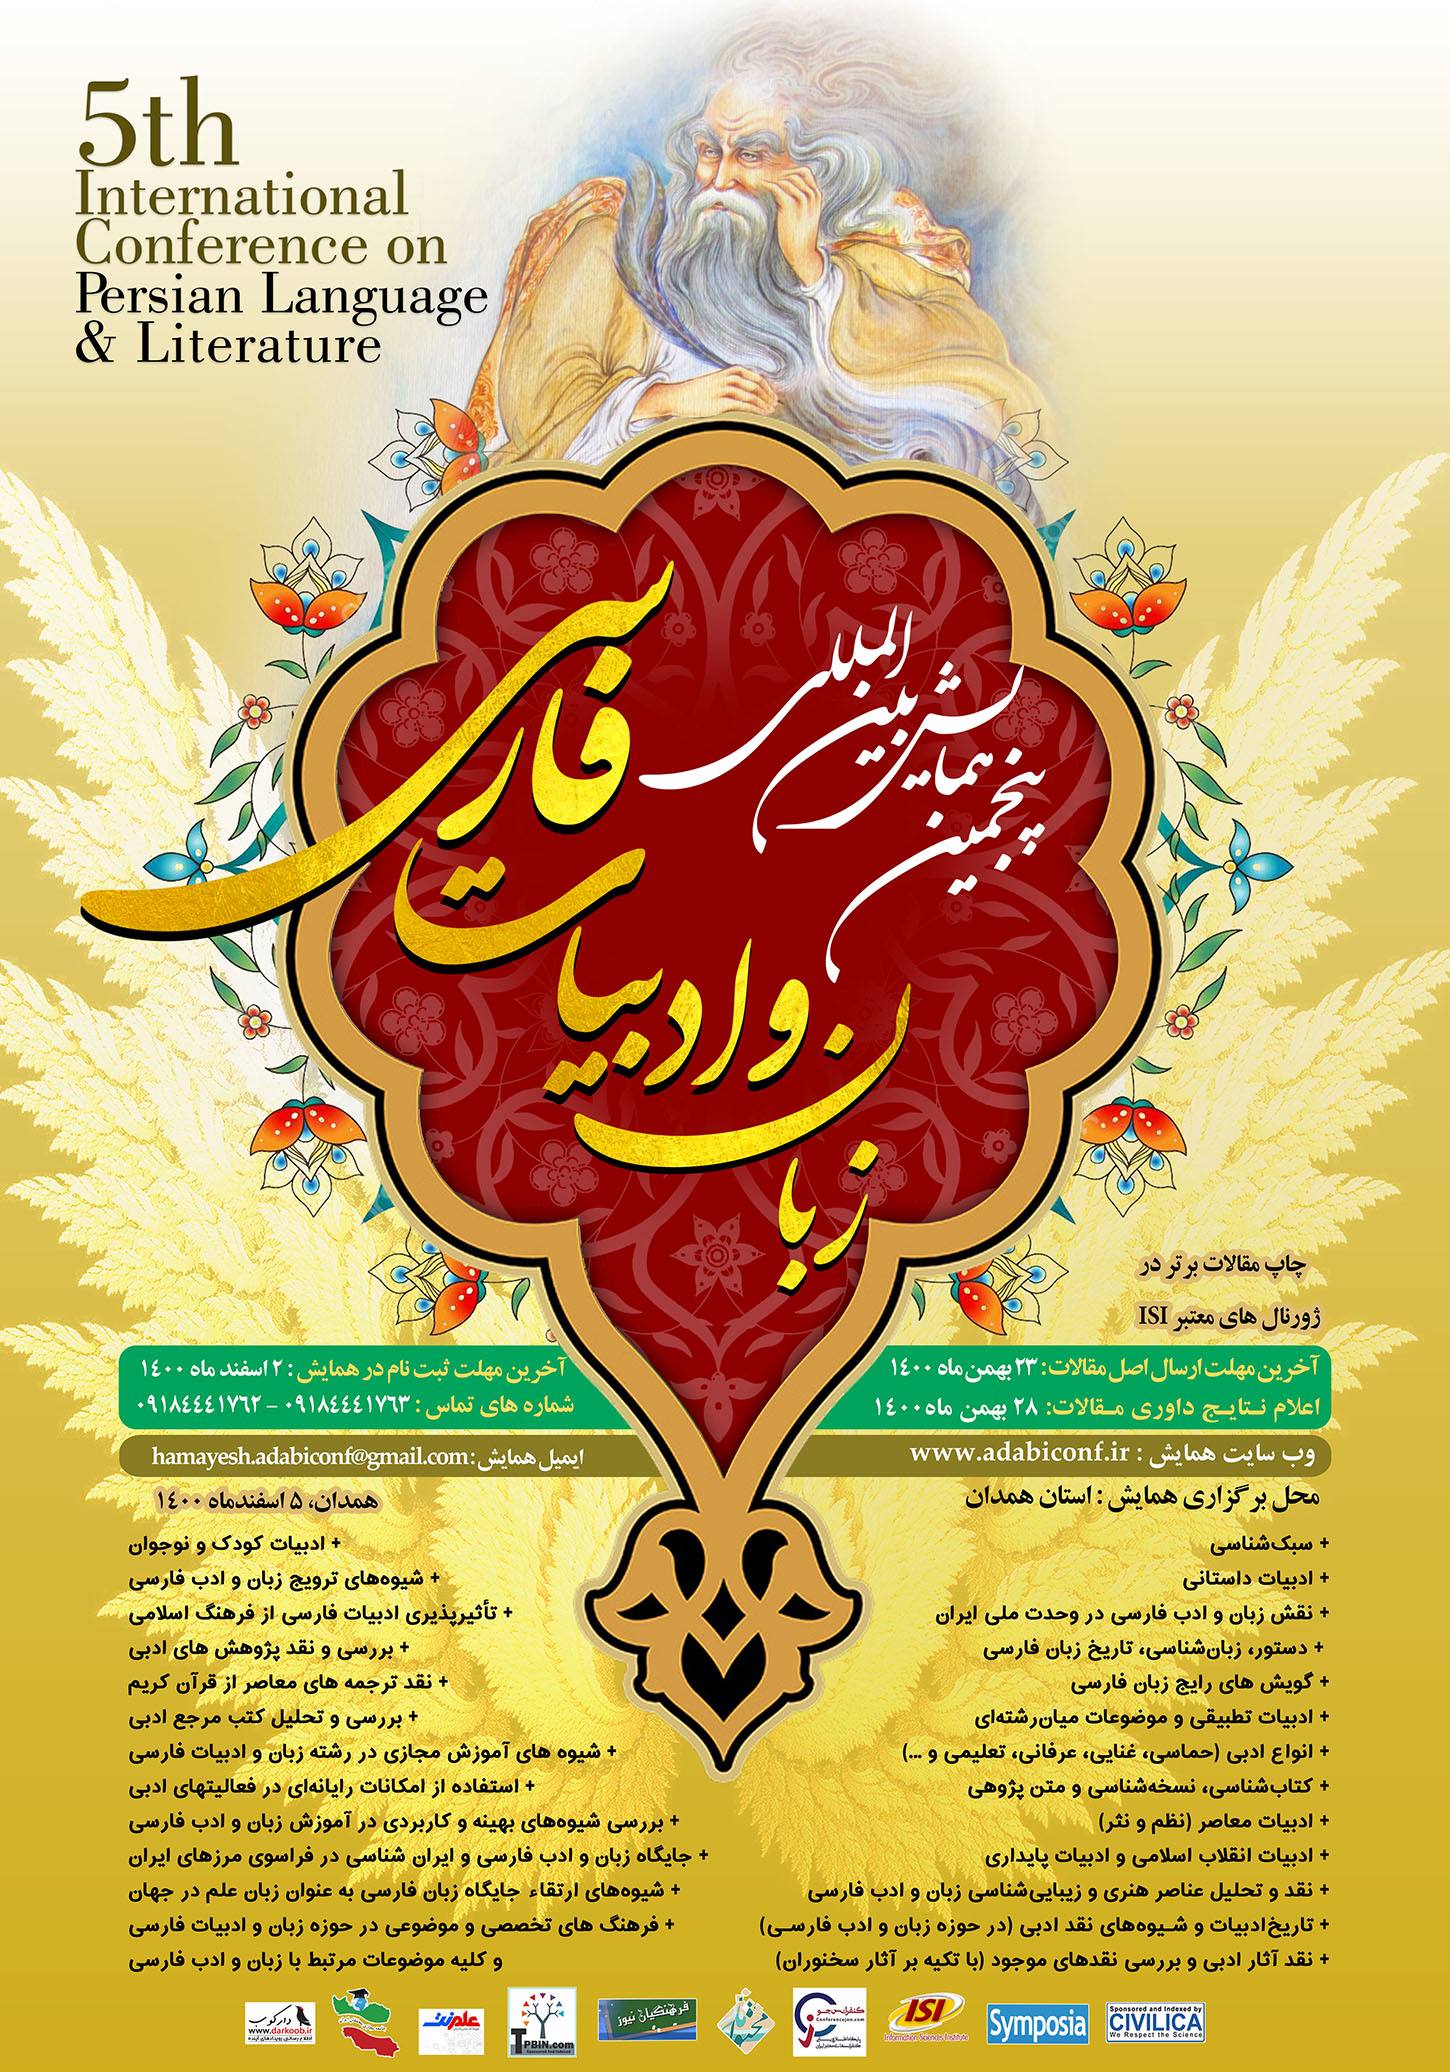 پوستر پنجمین همایش بین المللی زبان و ادبیات فارسی